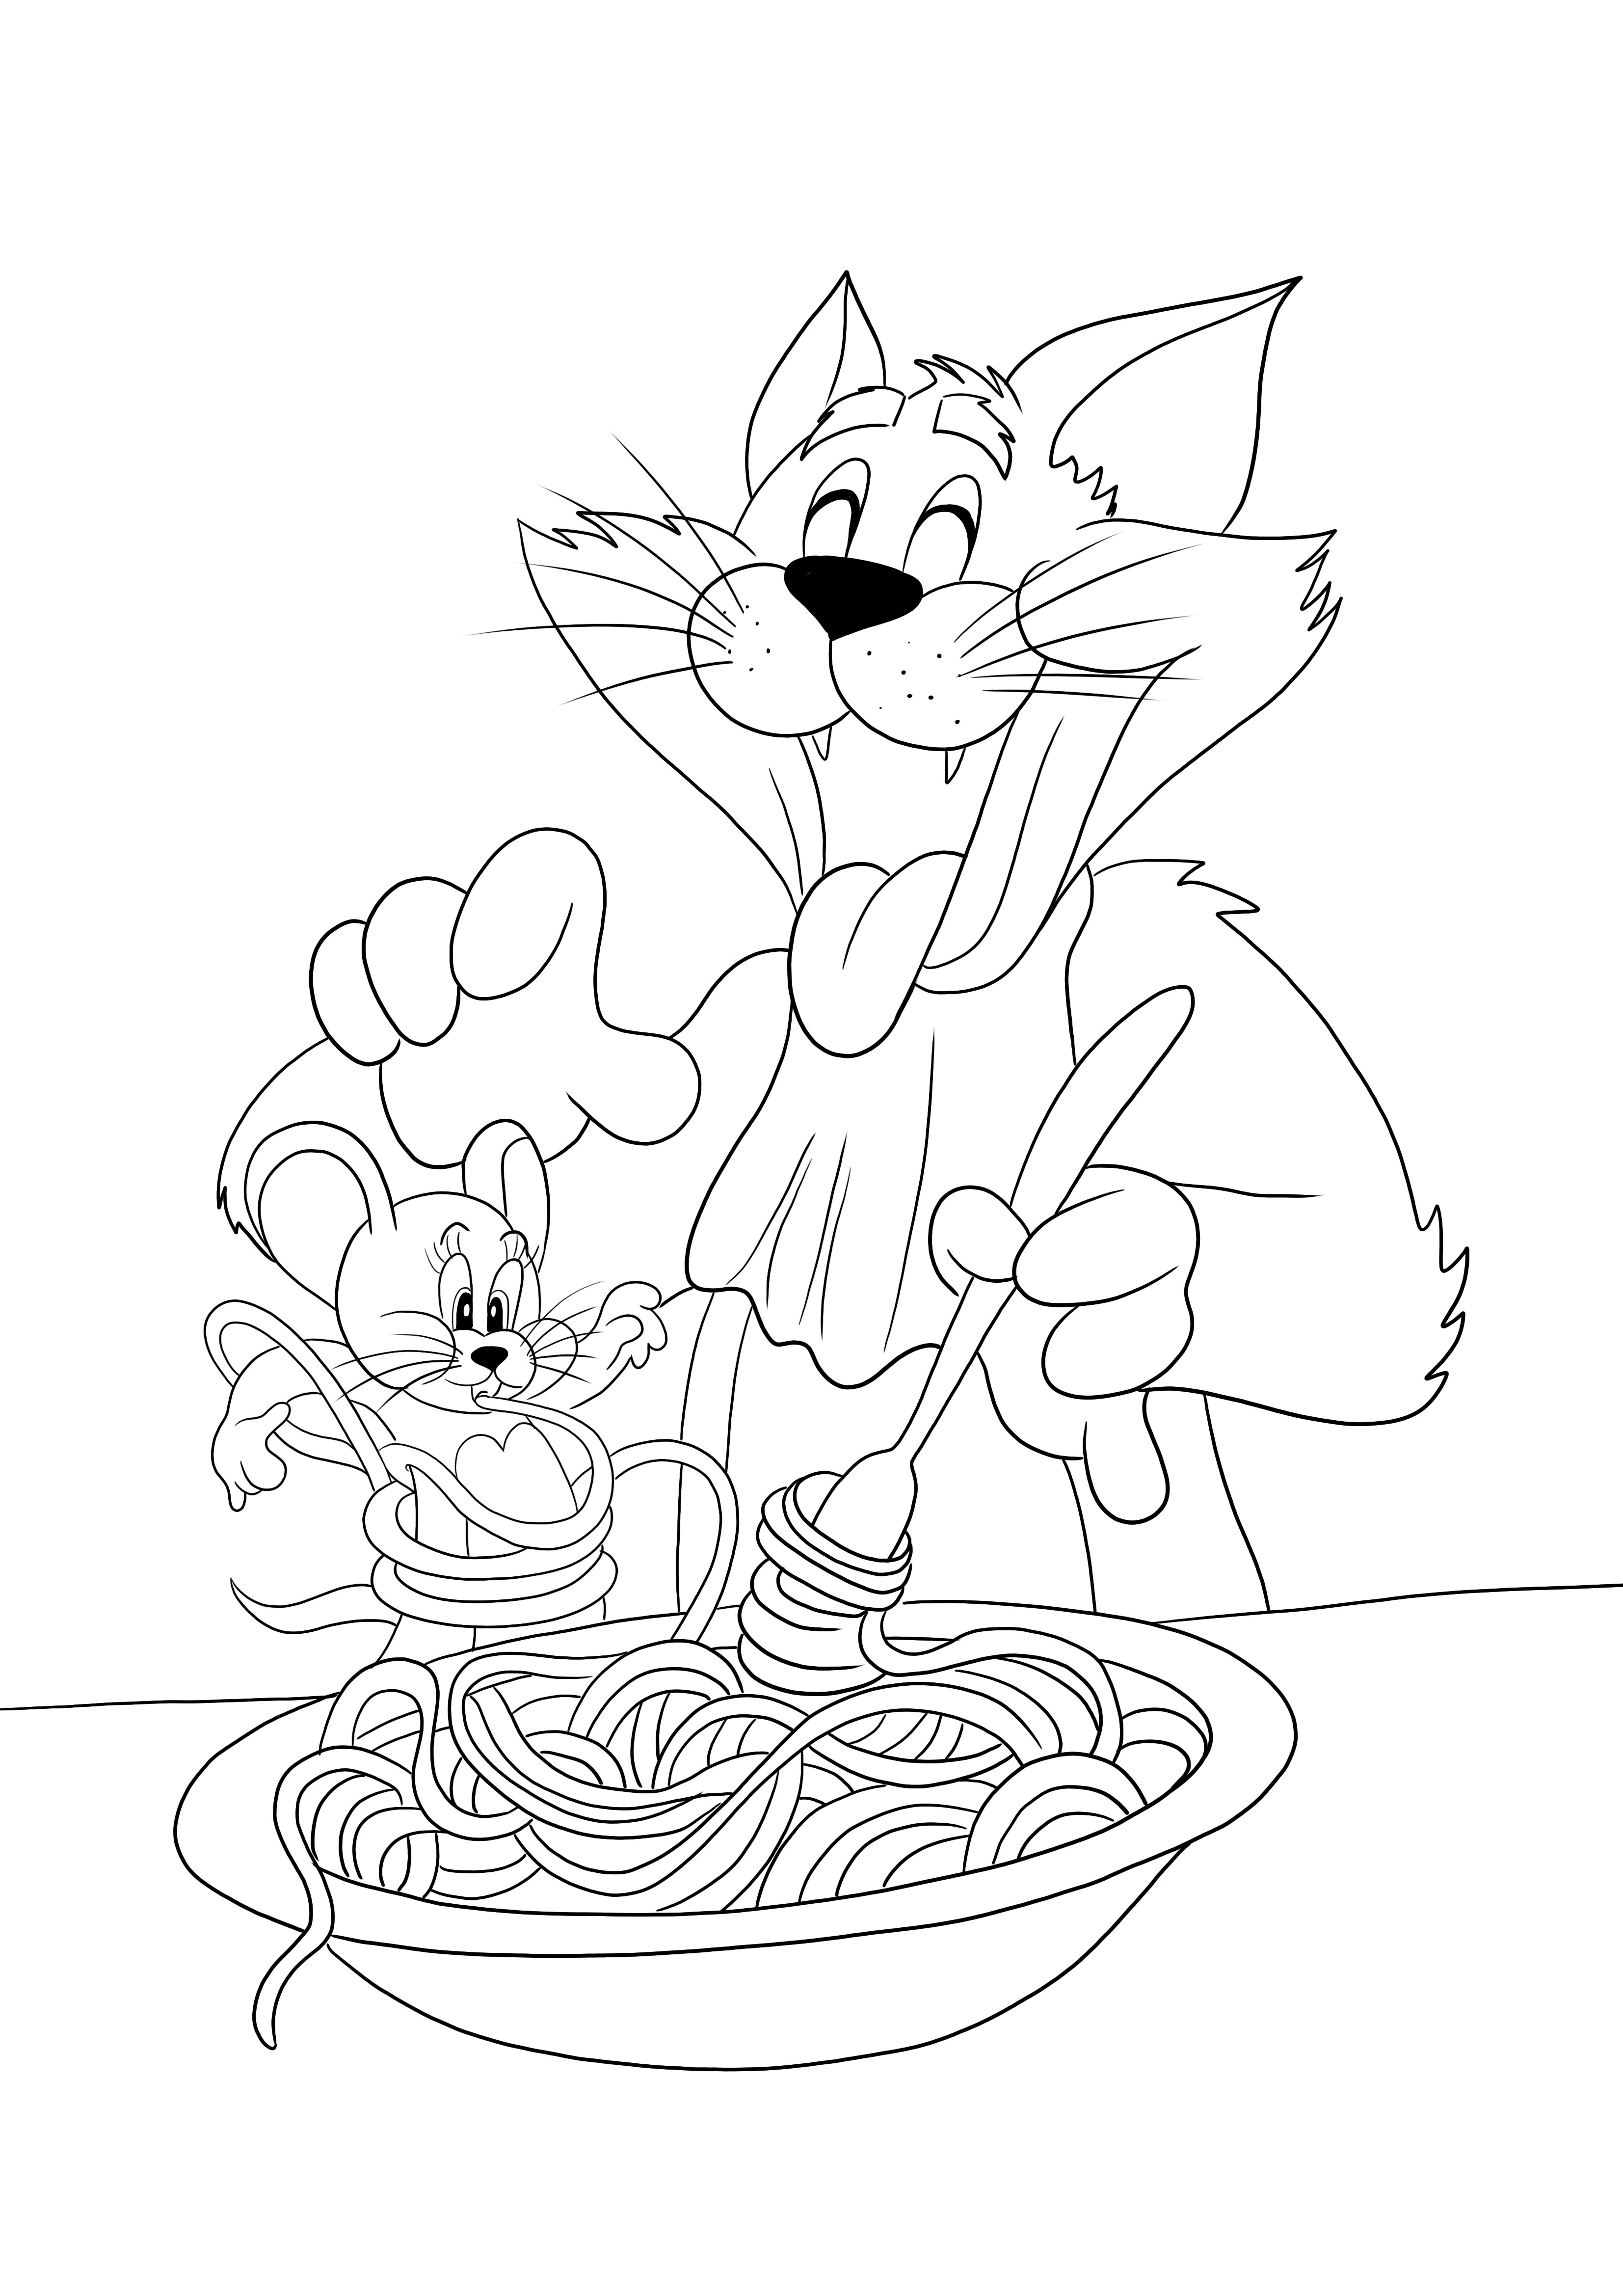 Tom está comendo macarrão e Jerry - uma divertida impressão pronta para colorir